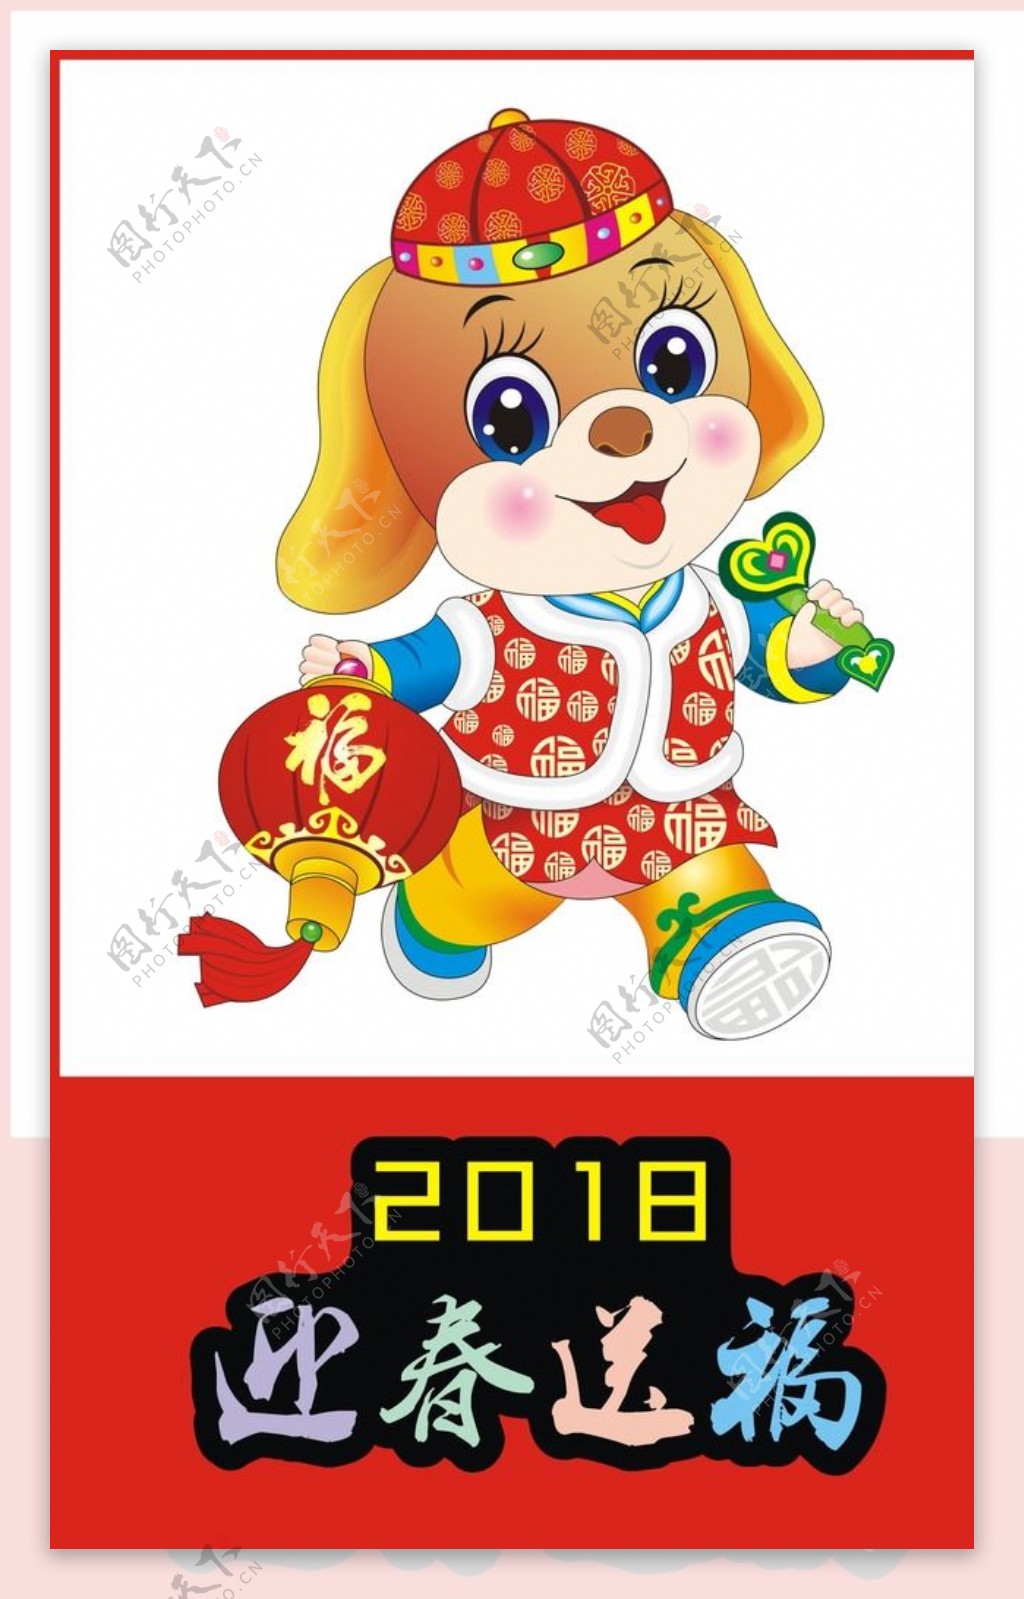 2018狗狗迎春送福